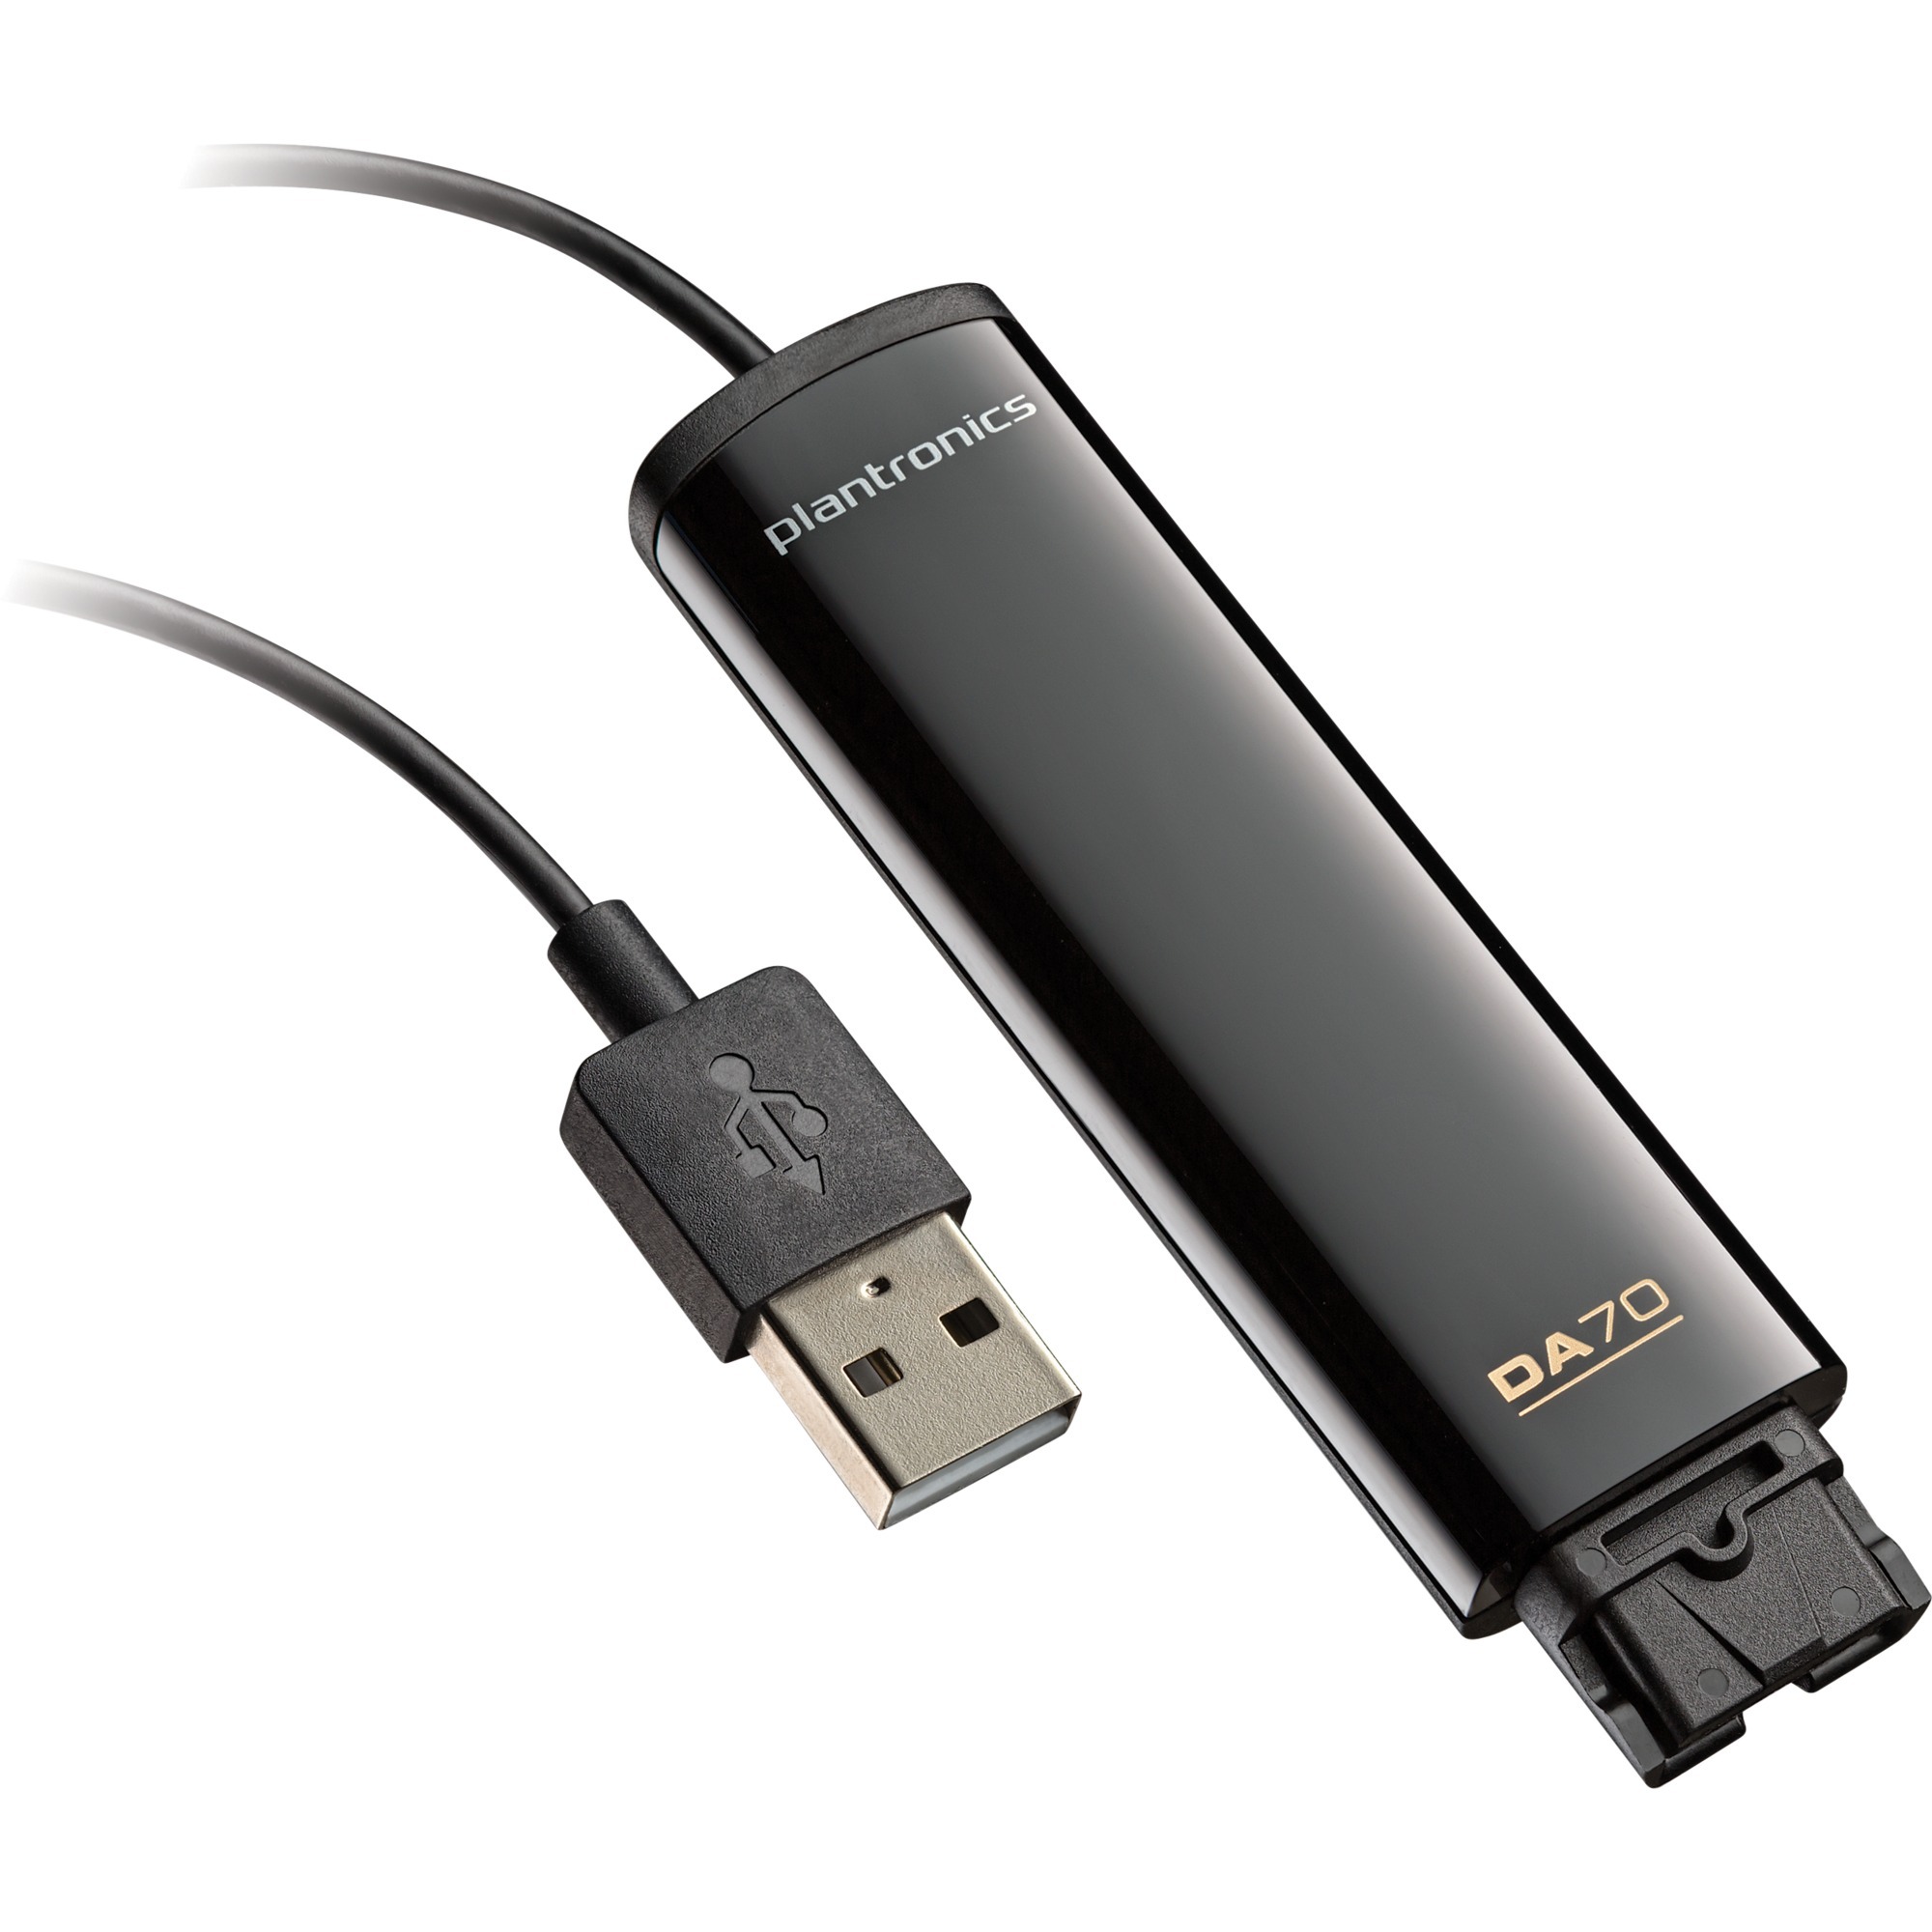 Image of Alternate - DA70 Wideband QD auf USB Adapter online einkaufen bei Alternate